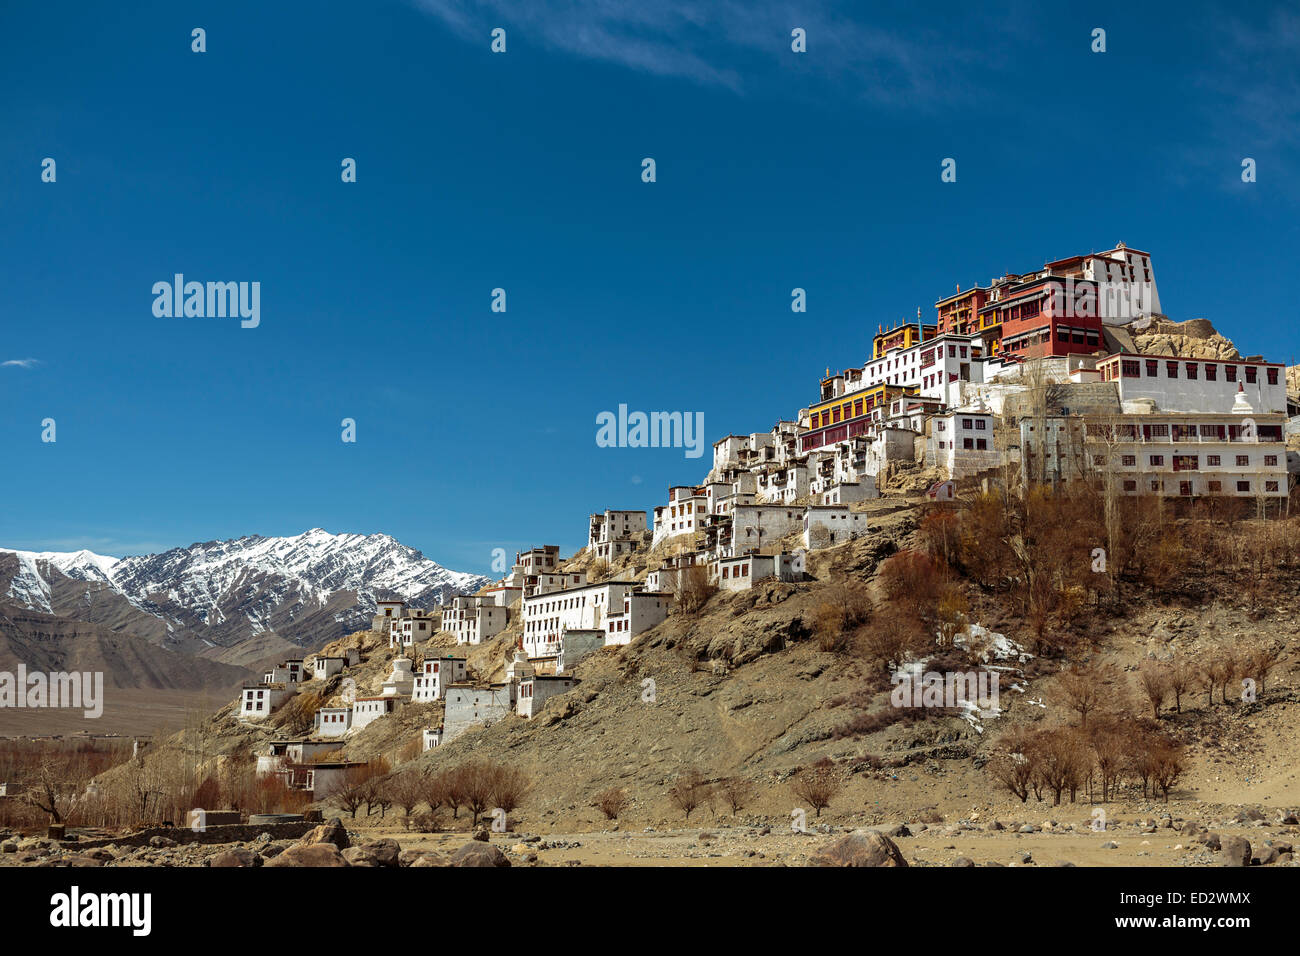 Thikse Kloster oben auf einem Felsvorsprung in der Indus Tal von Ladakh in Nordindien.  Dies ist ein tibetischer Stil buddhistischer Gompa. Stockfoto